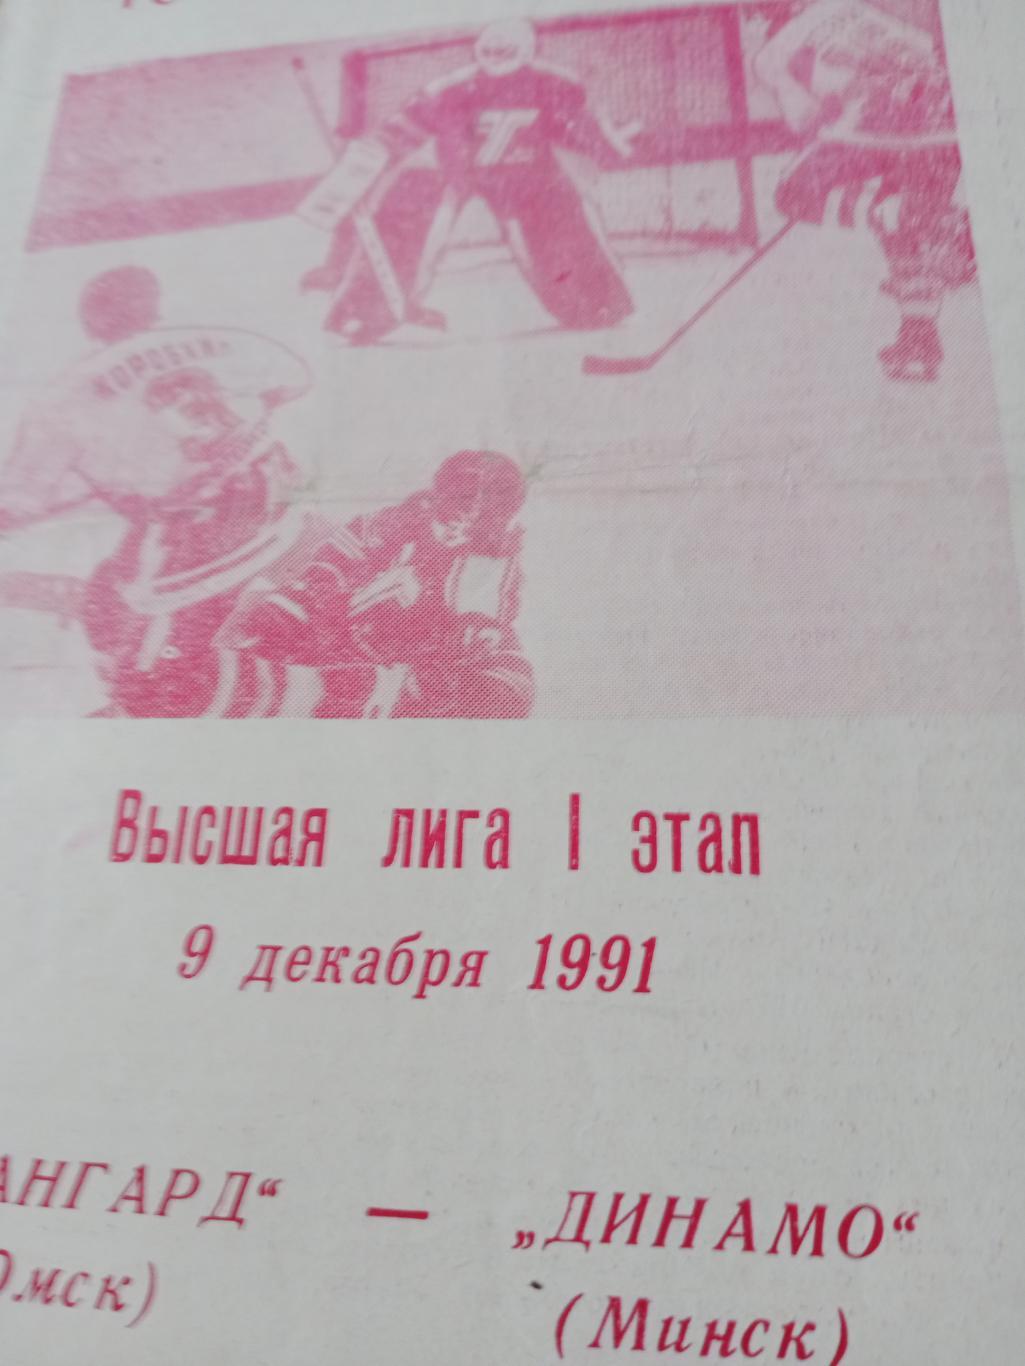 Авангард Омск - Динамо Минск. 9 декабря 1991 год